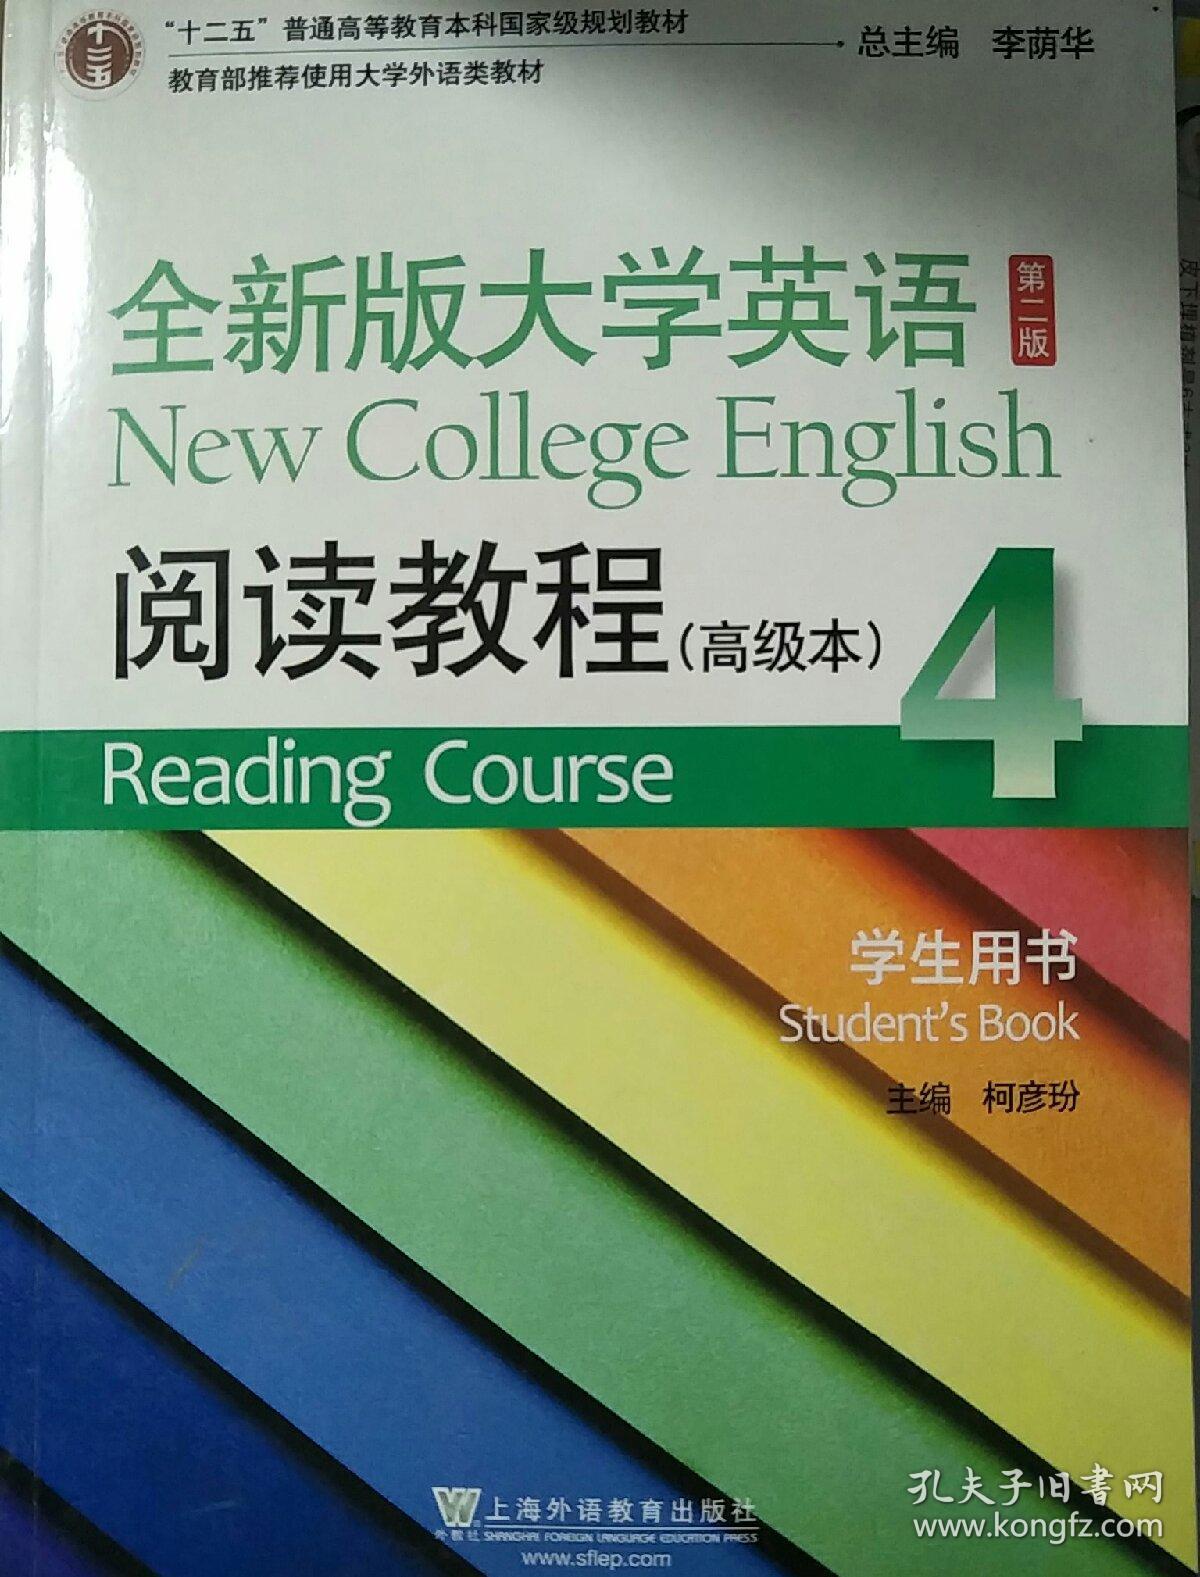 全新版大学英语(第二版)阅读教程(高级本)学生用书. 4. 4